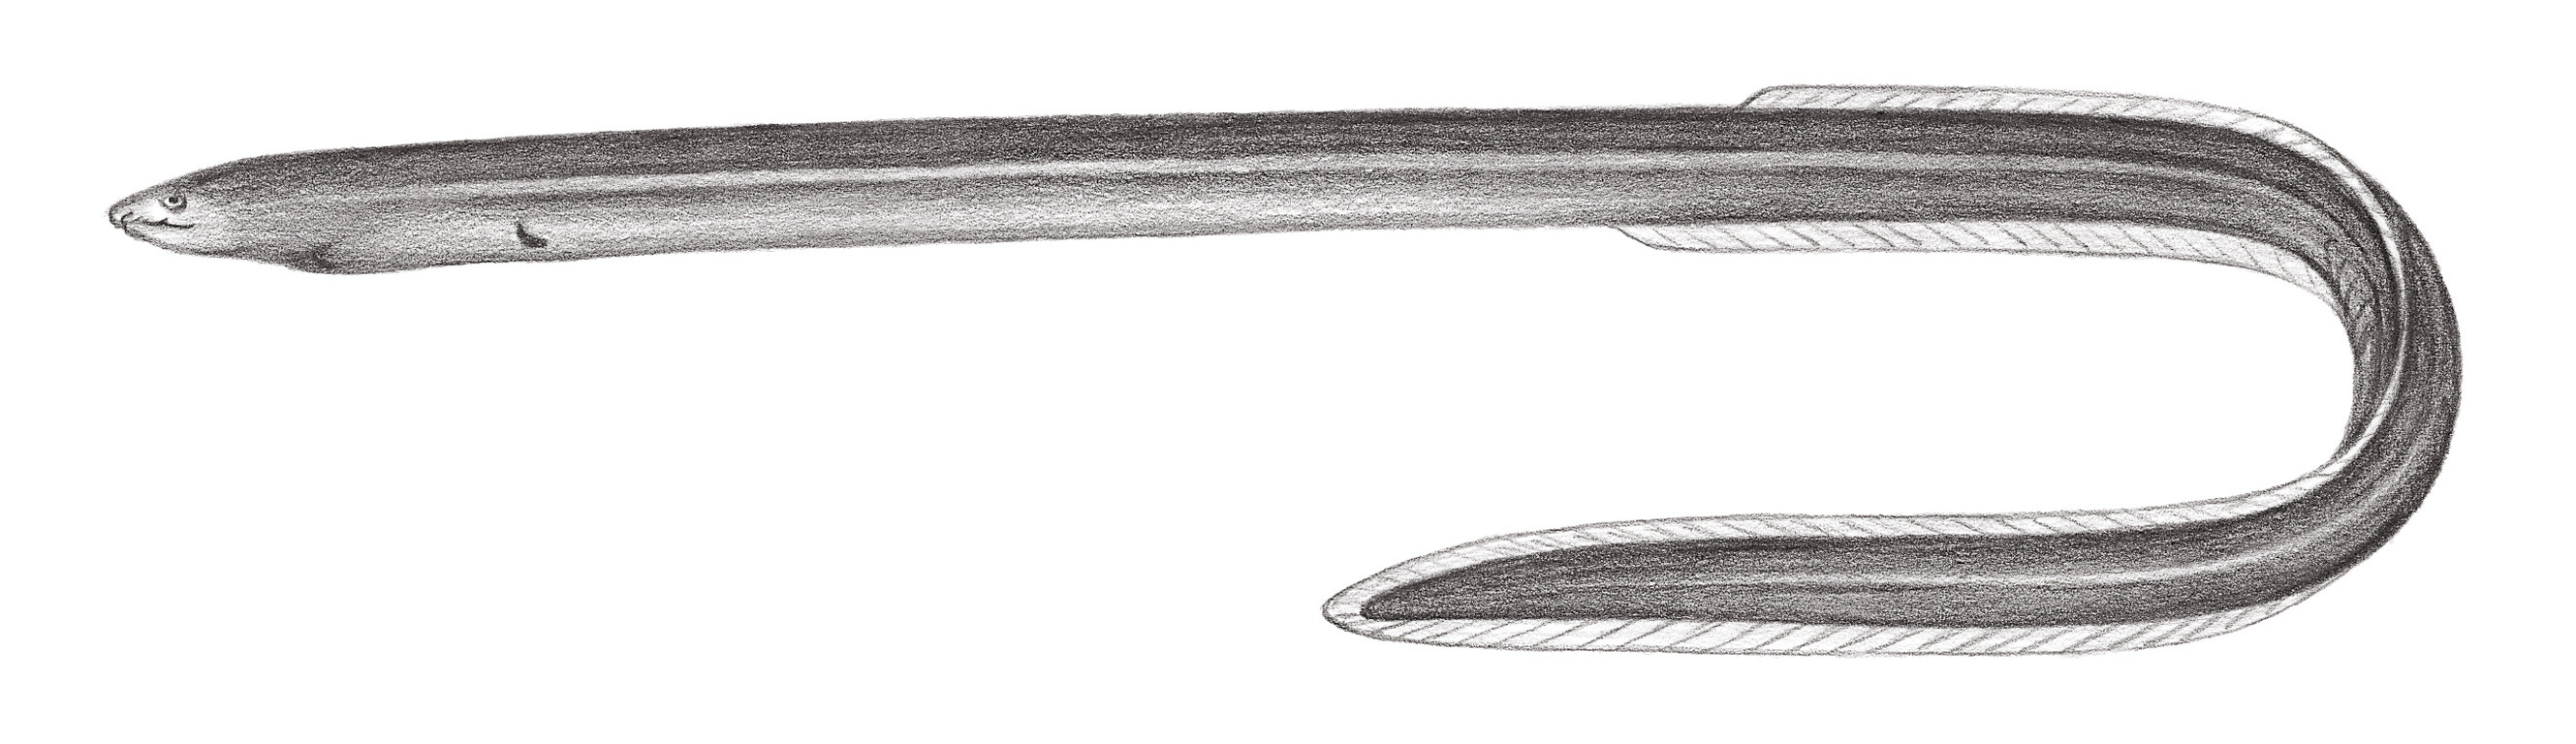 246.	裸蟲鰻 Muraenichthys gymnotus Bleeker, 1857